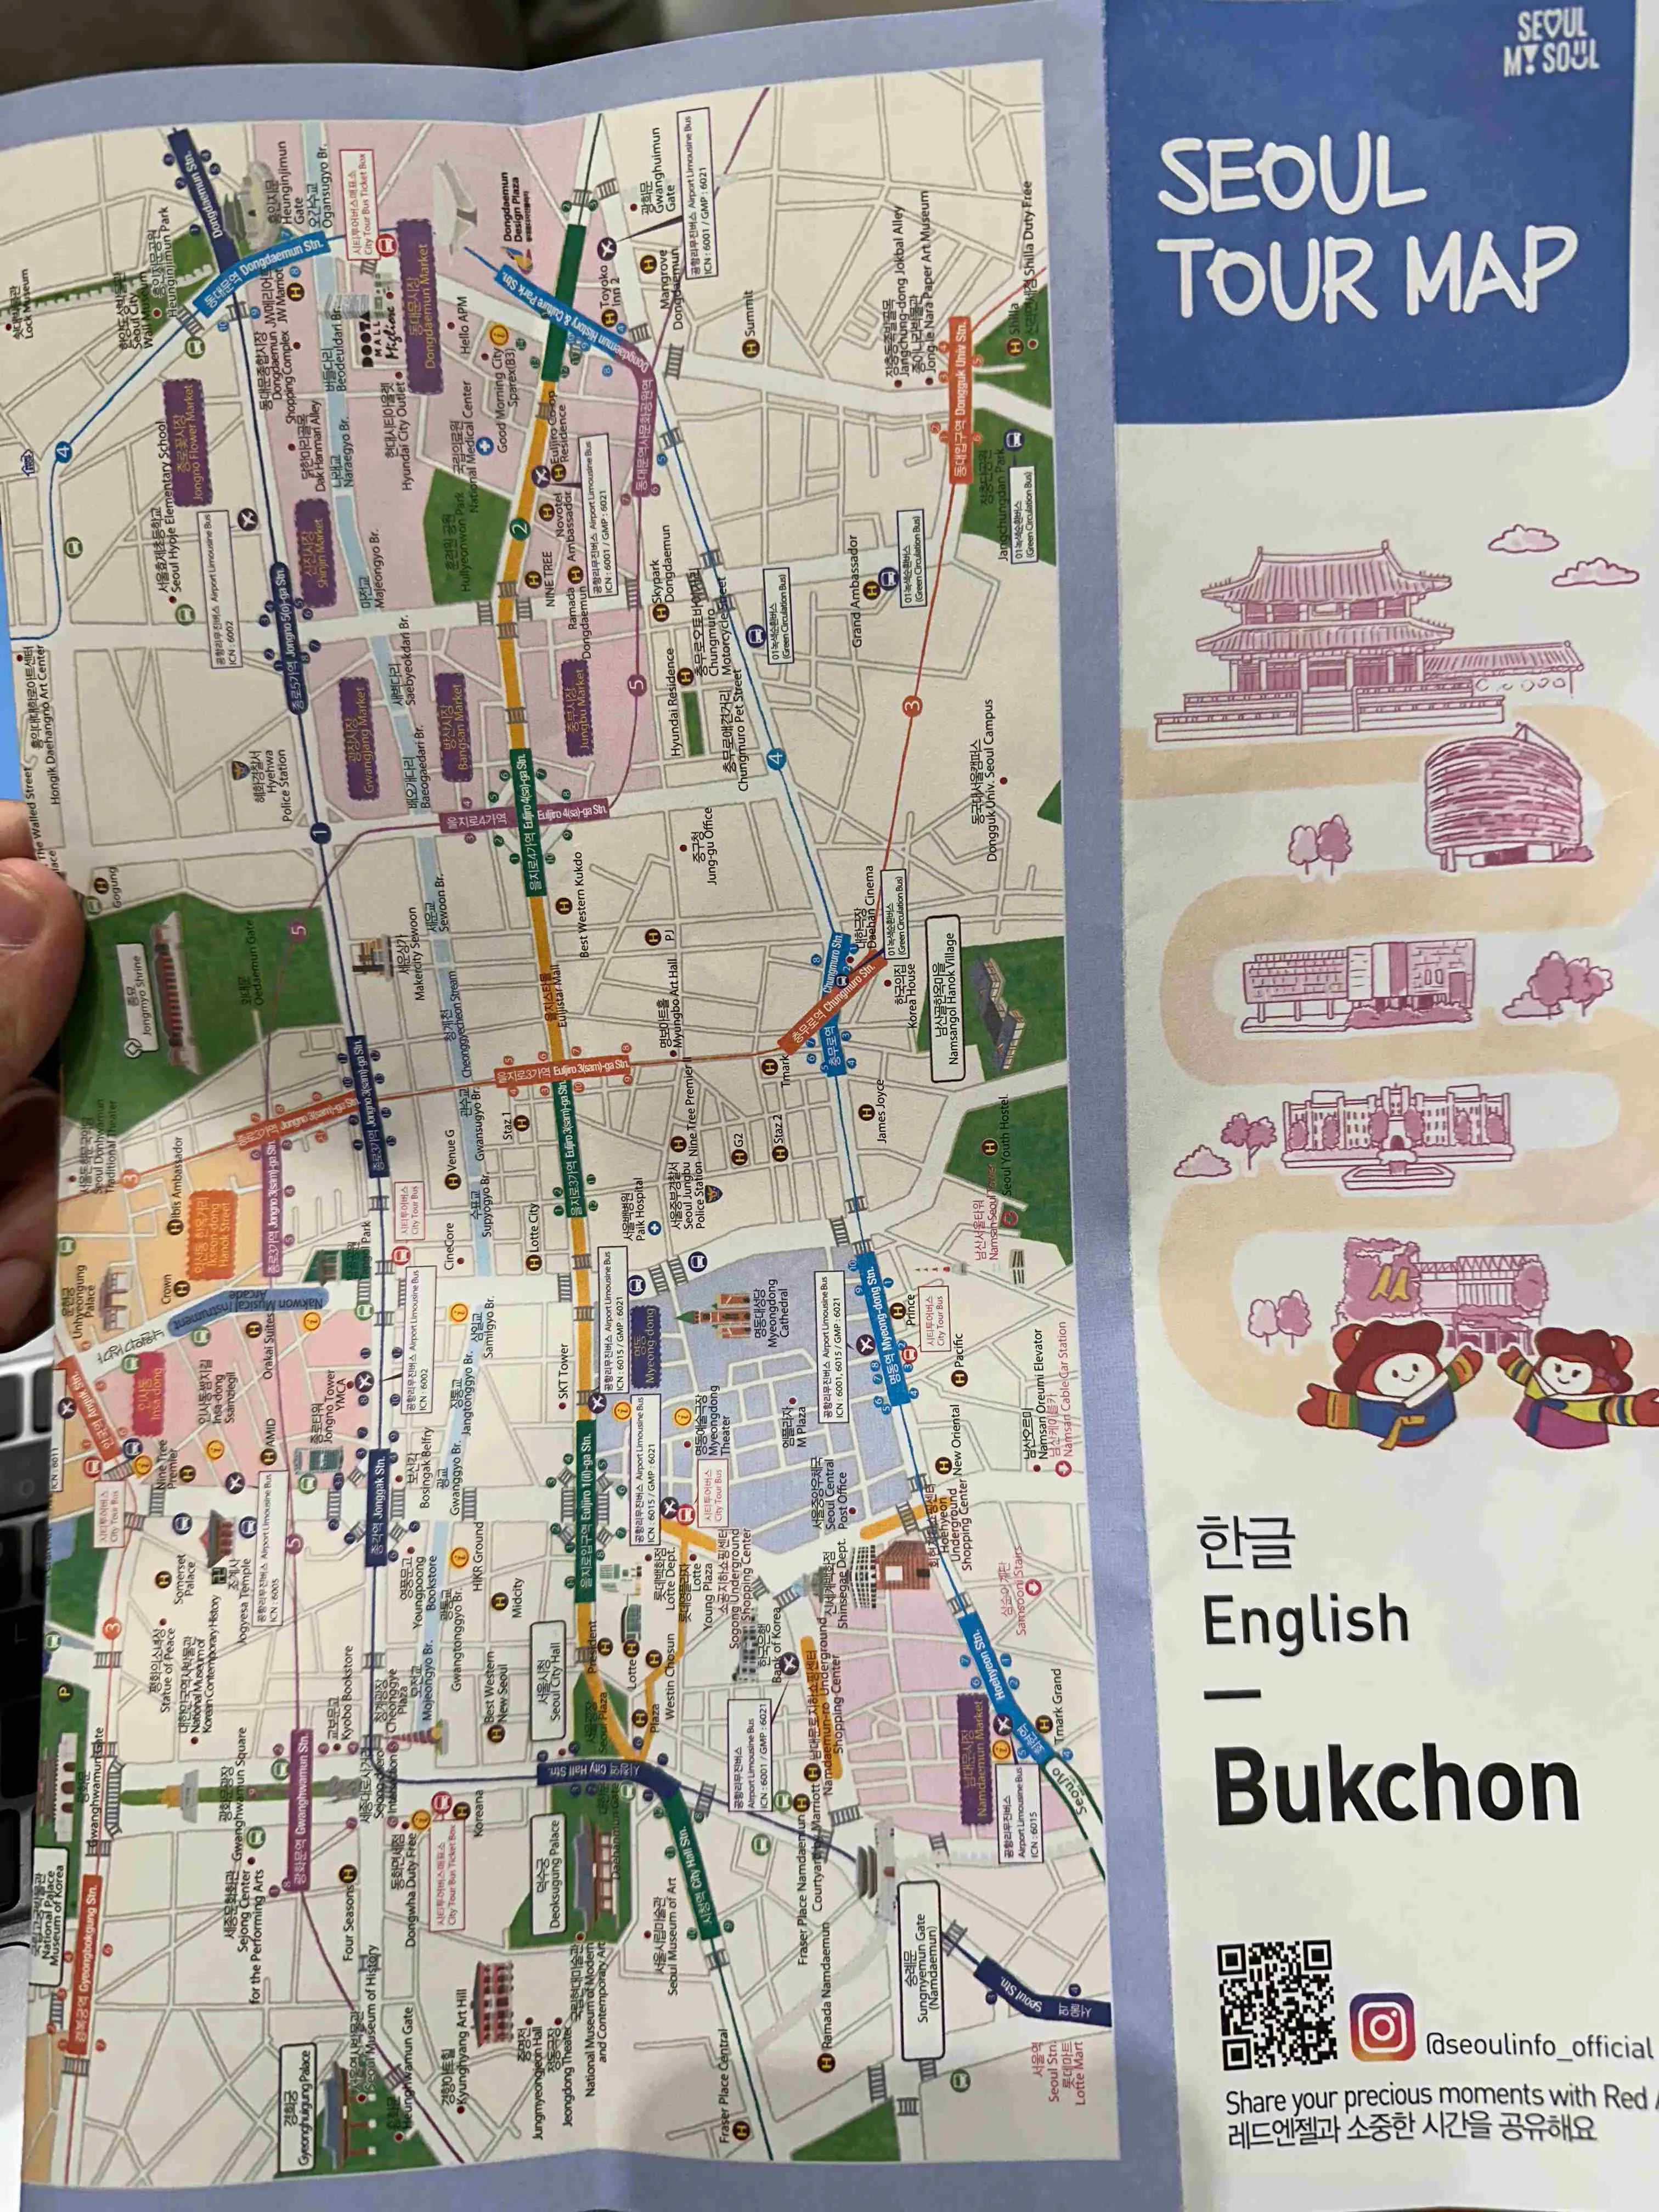 Buckchon hanok village Tourist Map